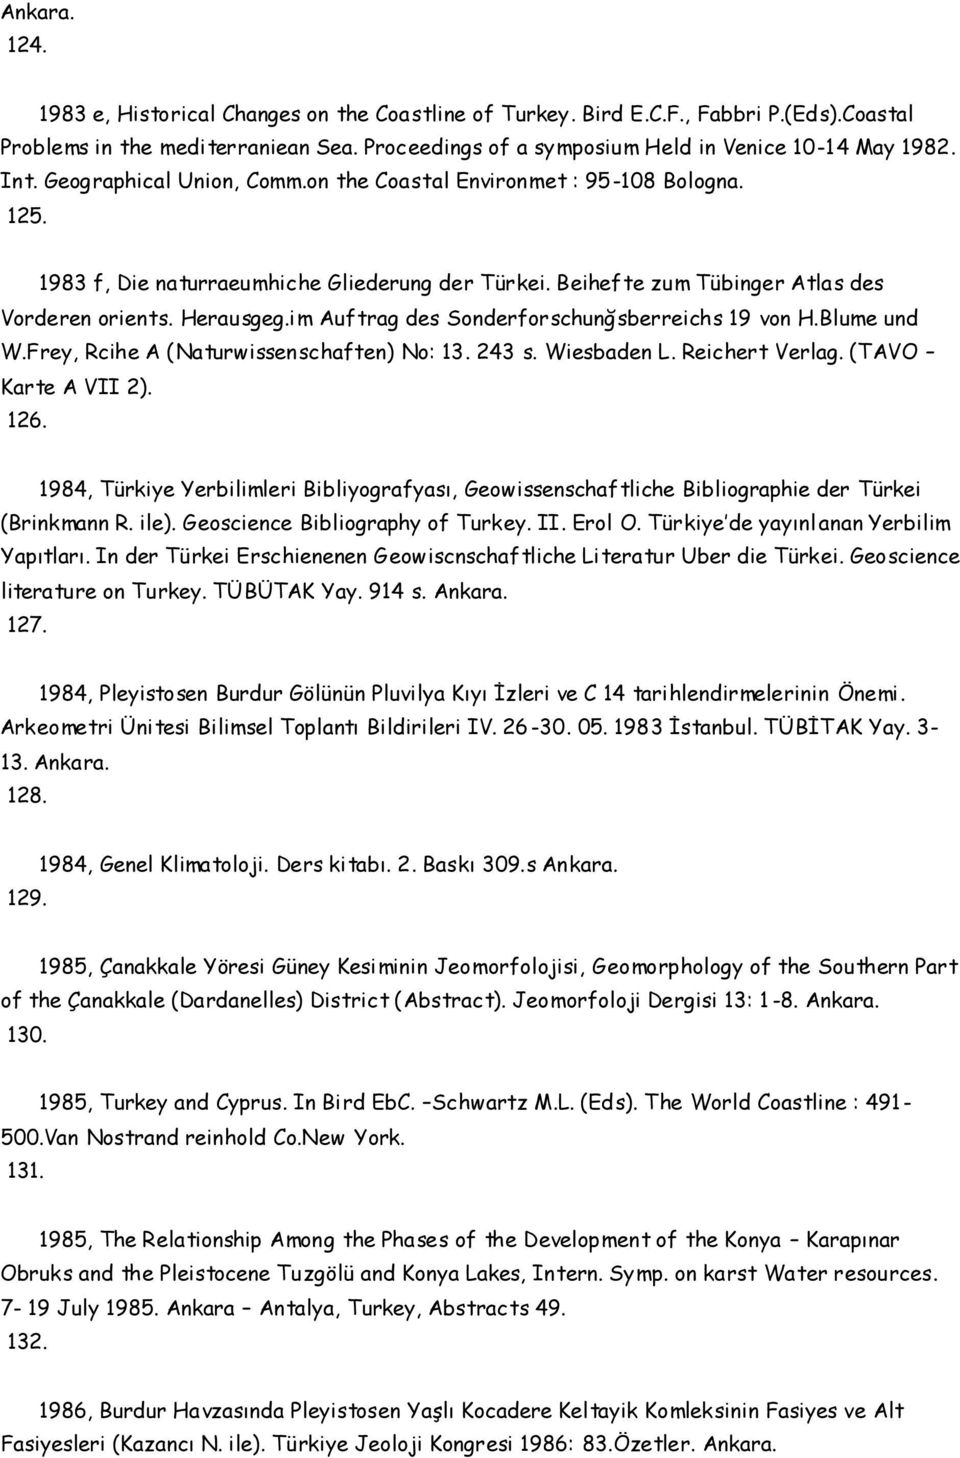 im Auftrag des Sonderforschunğsberreichs 19 von H.Blume und W.Frey, Rcihe A (Naturwissenschaften) No: 13. 243 s. Wiesbaden L. Reichert Verlag. (TAVO Karte A VII 2). 126.